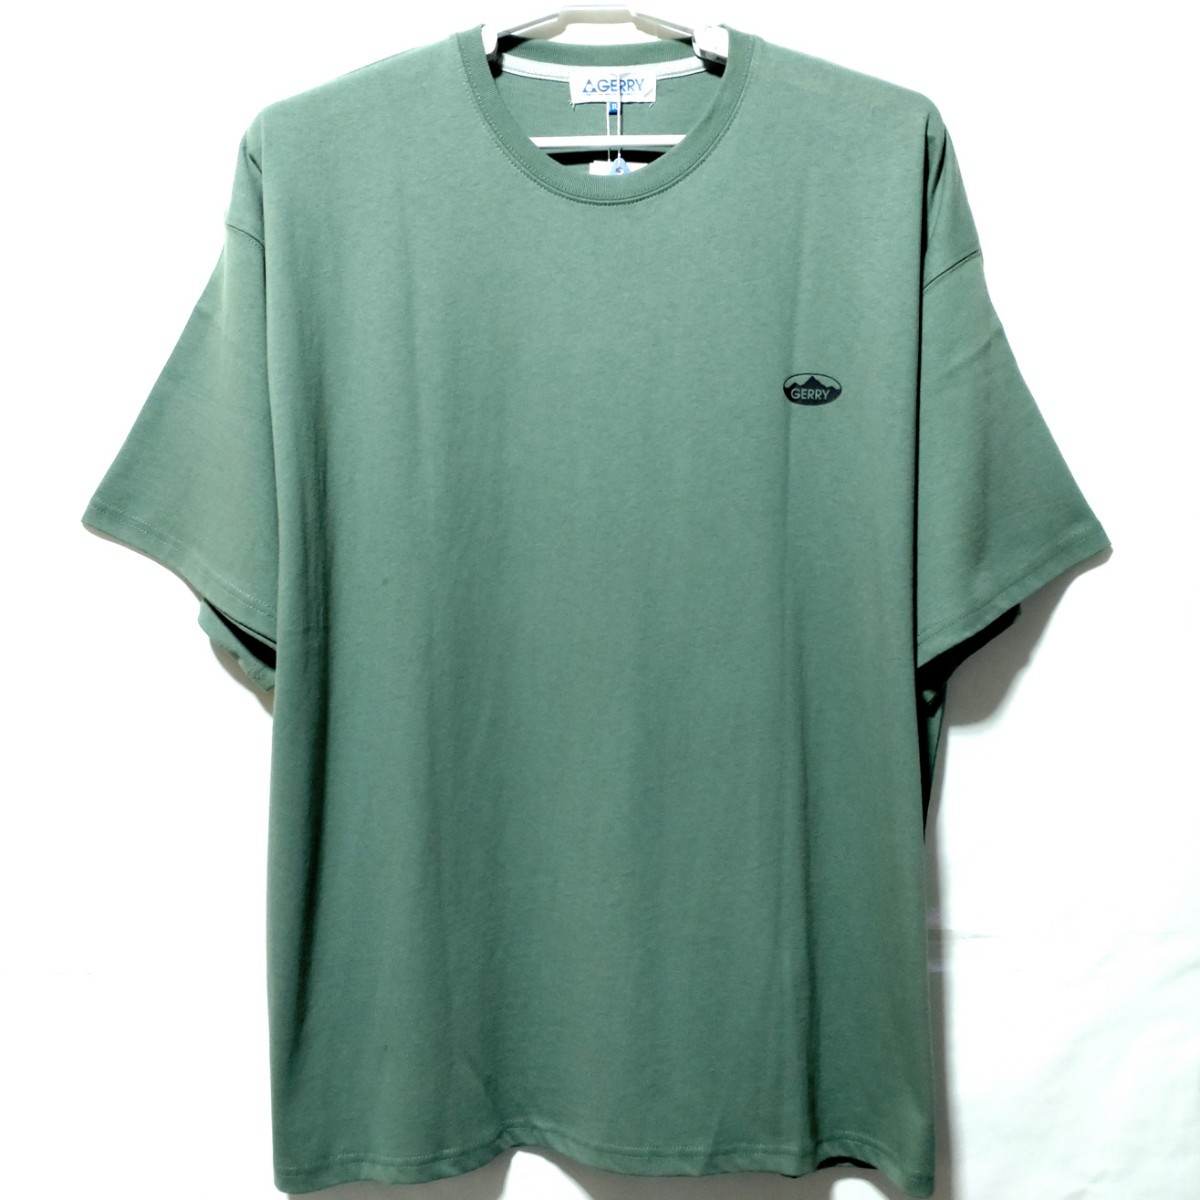 特価/未使用【サイズ=3L(2XL)】GERRY/ジェリー/メンズ/半袖/Tシャツ/ビッグシルエット/胸囲=106~114cm/light.greenの画像3